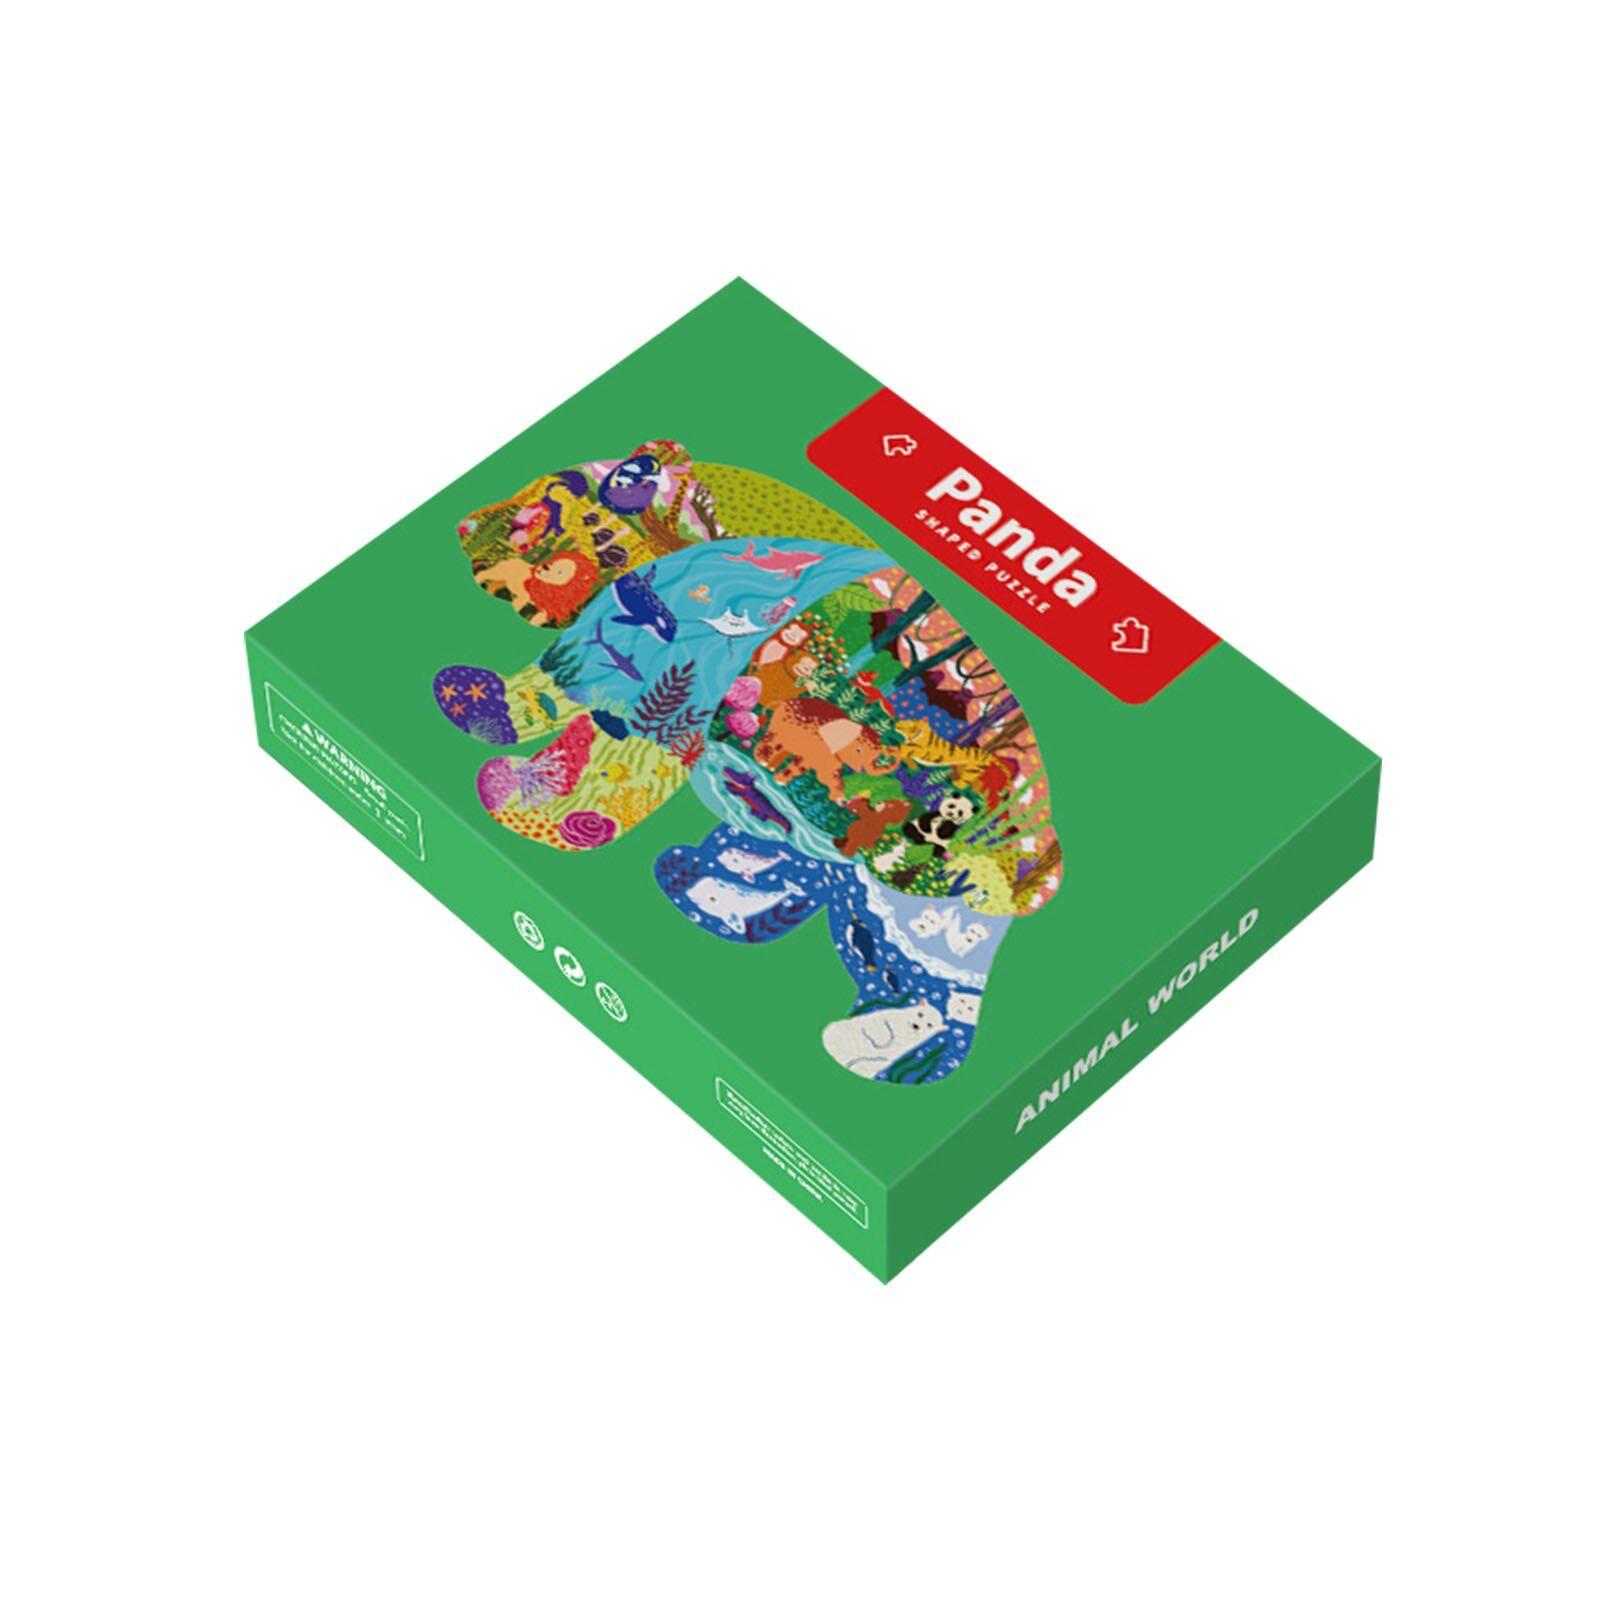 Puzzle en carton pour enfants de 4 à 8 ans, amoureux des animaux, baleine,  boîte de Puzzle au sol robuste, affiche, jouet éducatif pour garçon et